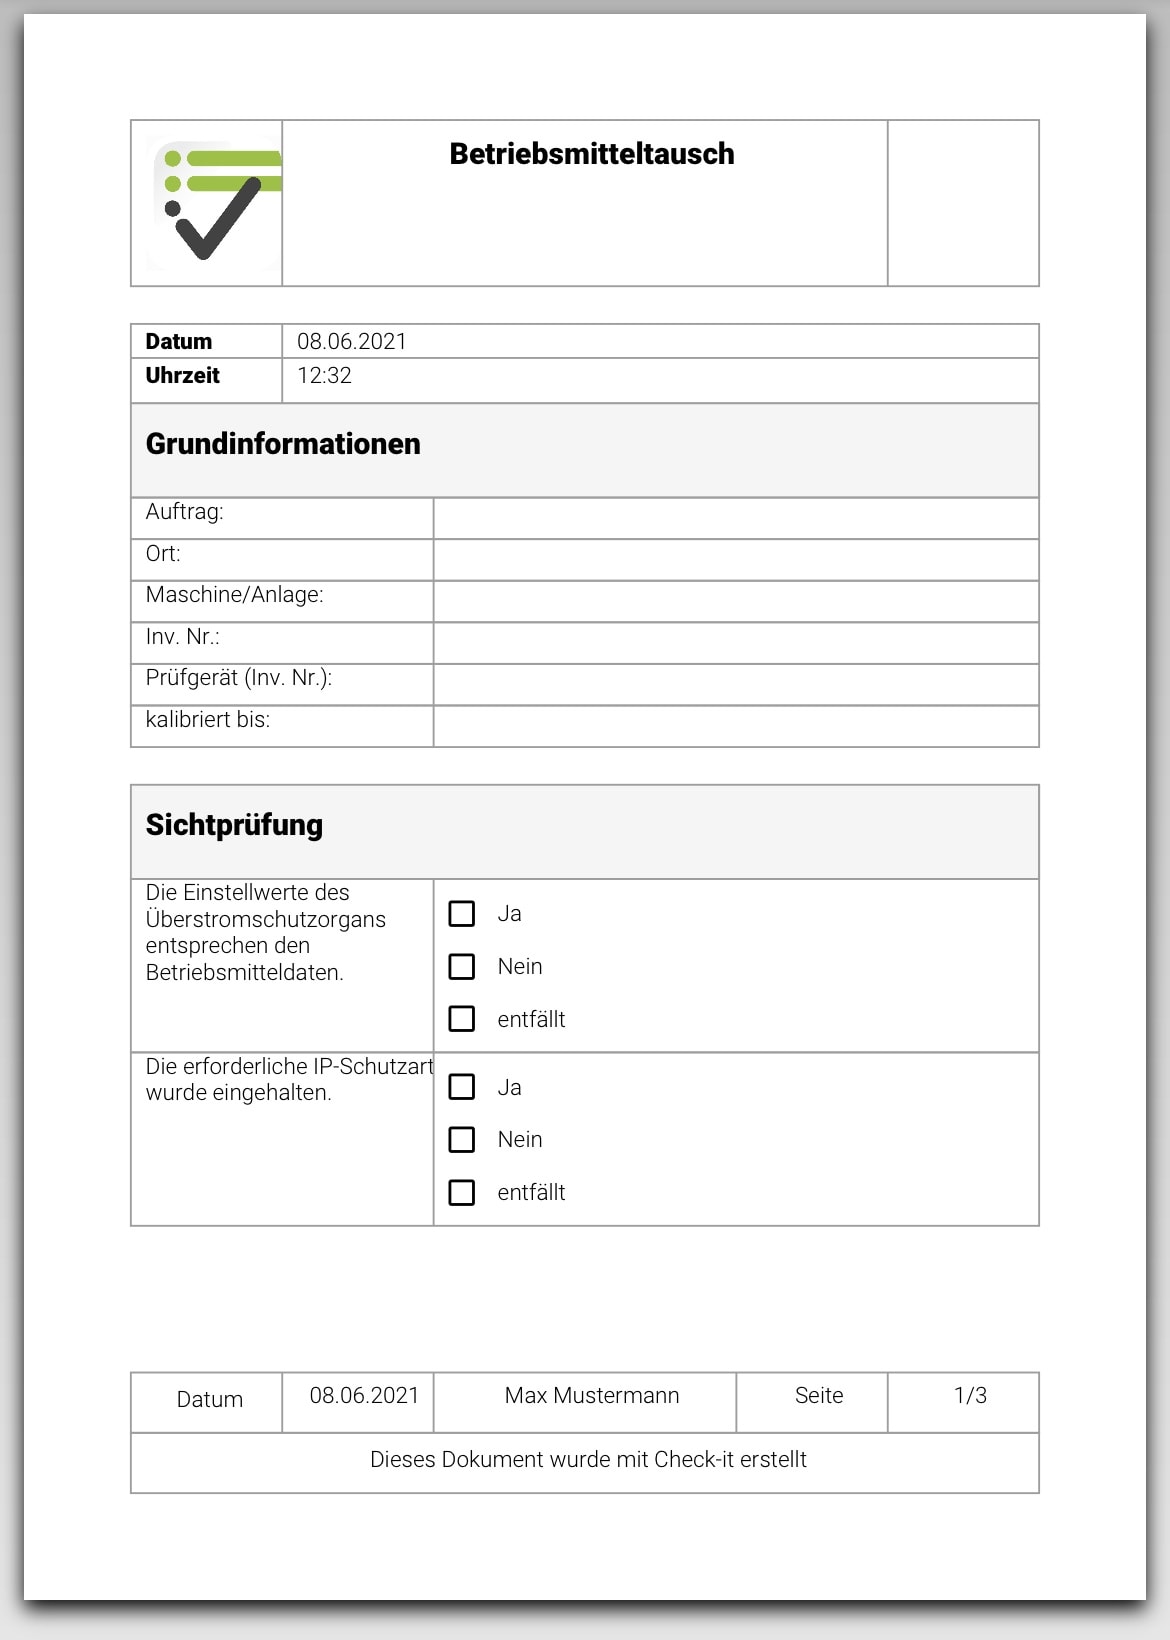 Das Bild zeigt die Checkliste Betriebsmitteltausch, wie sie nach dem Abschließen auf der App ausgegeben wird.